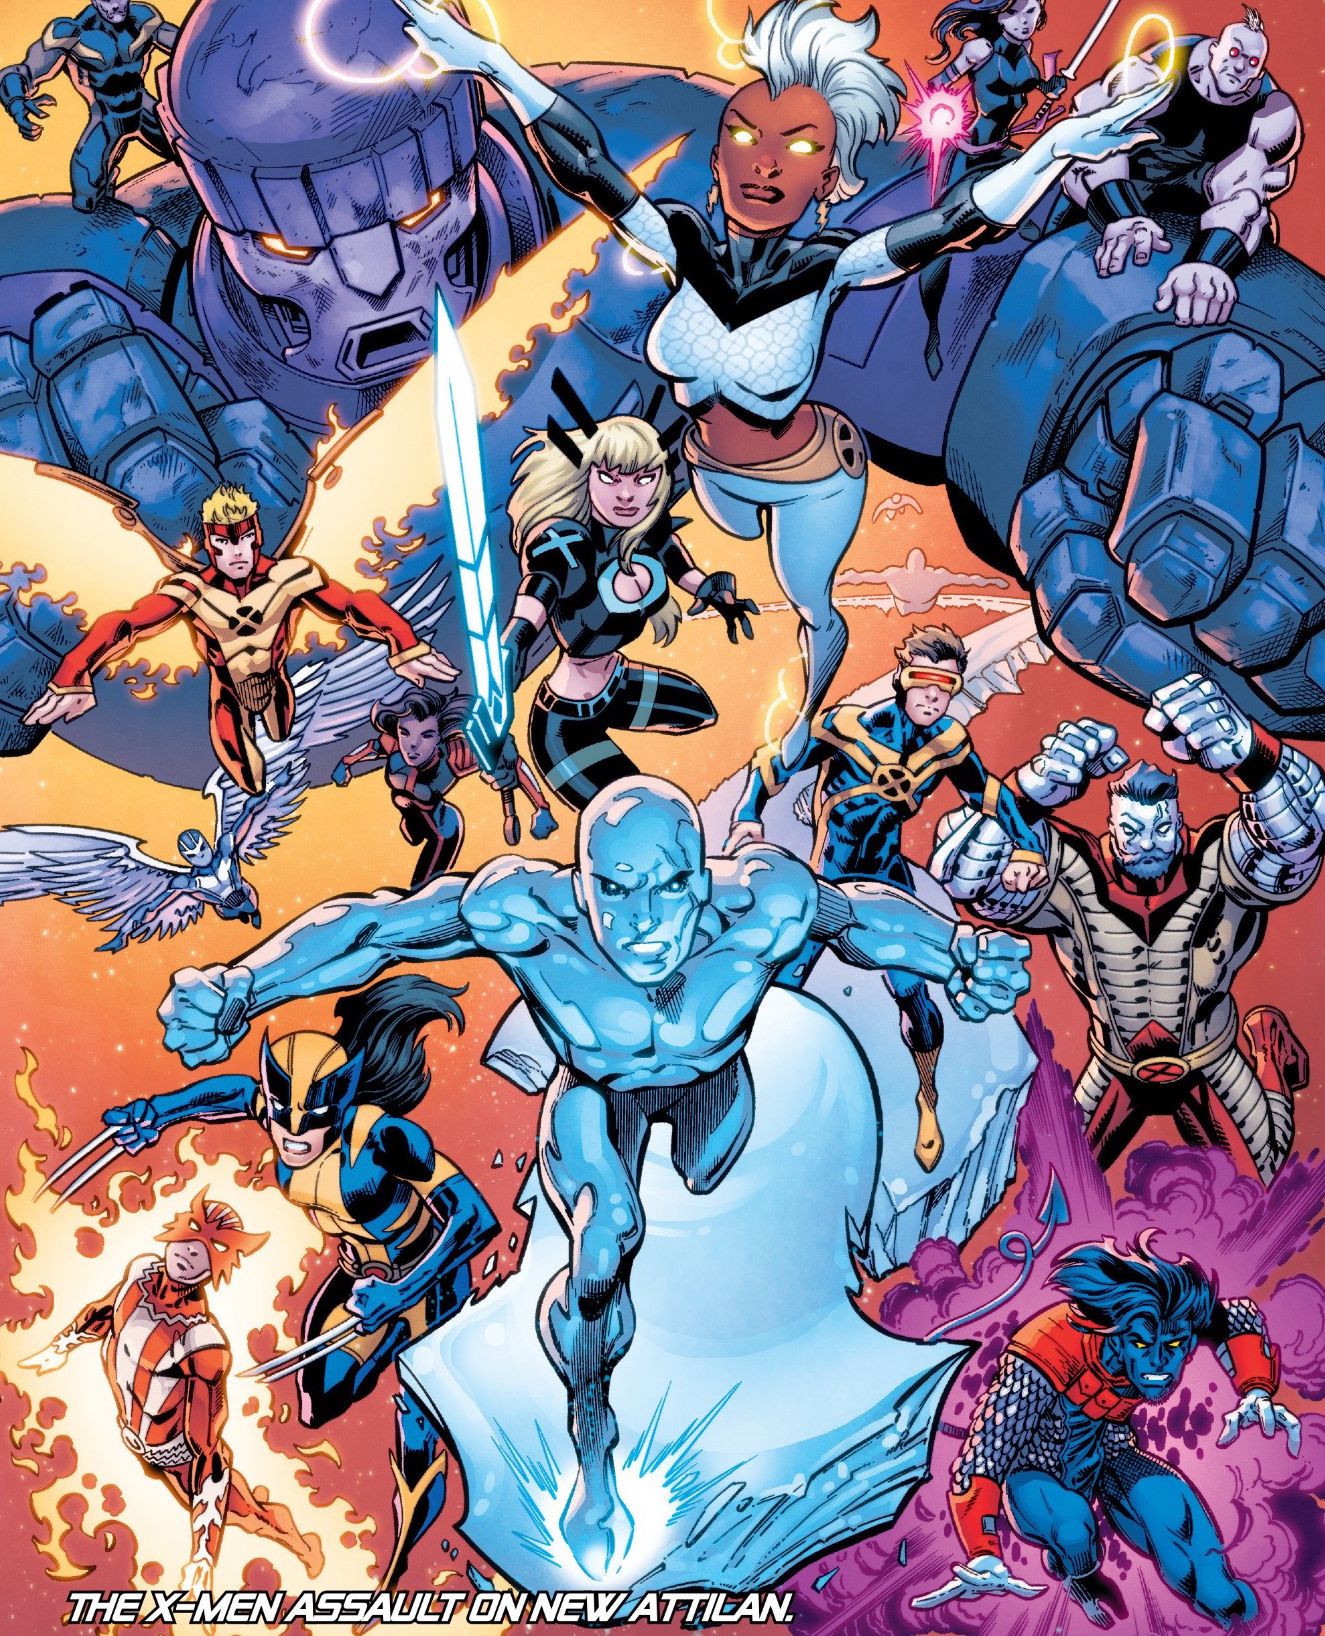 All-New X-Men #17